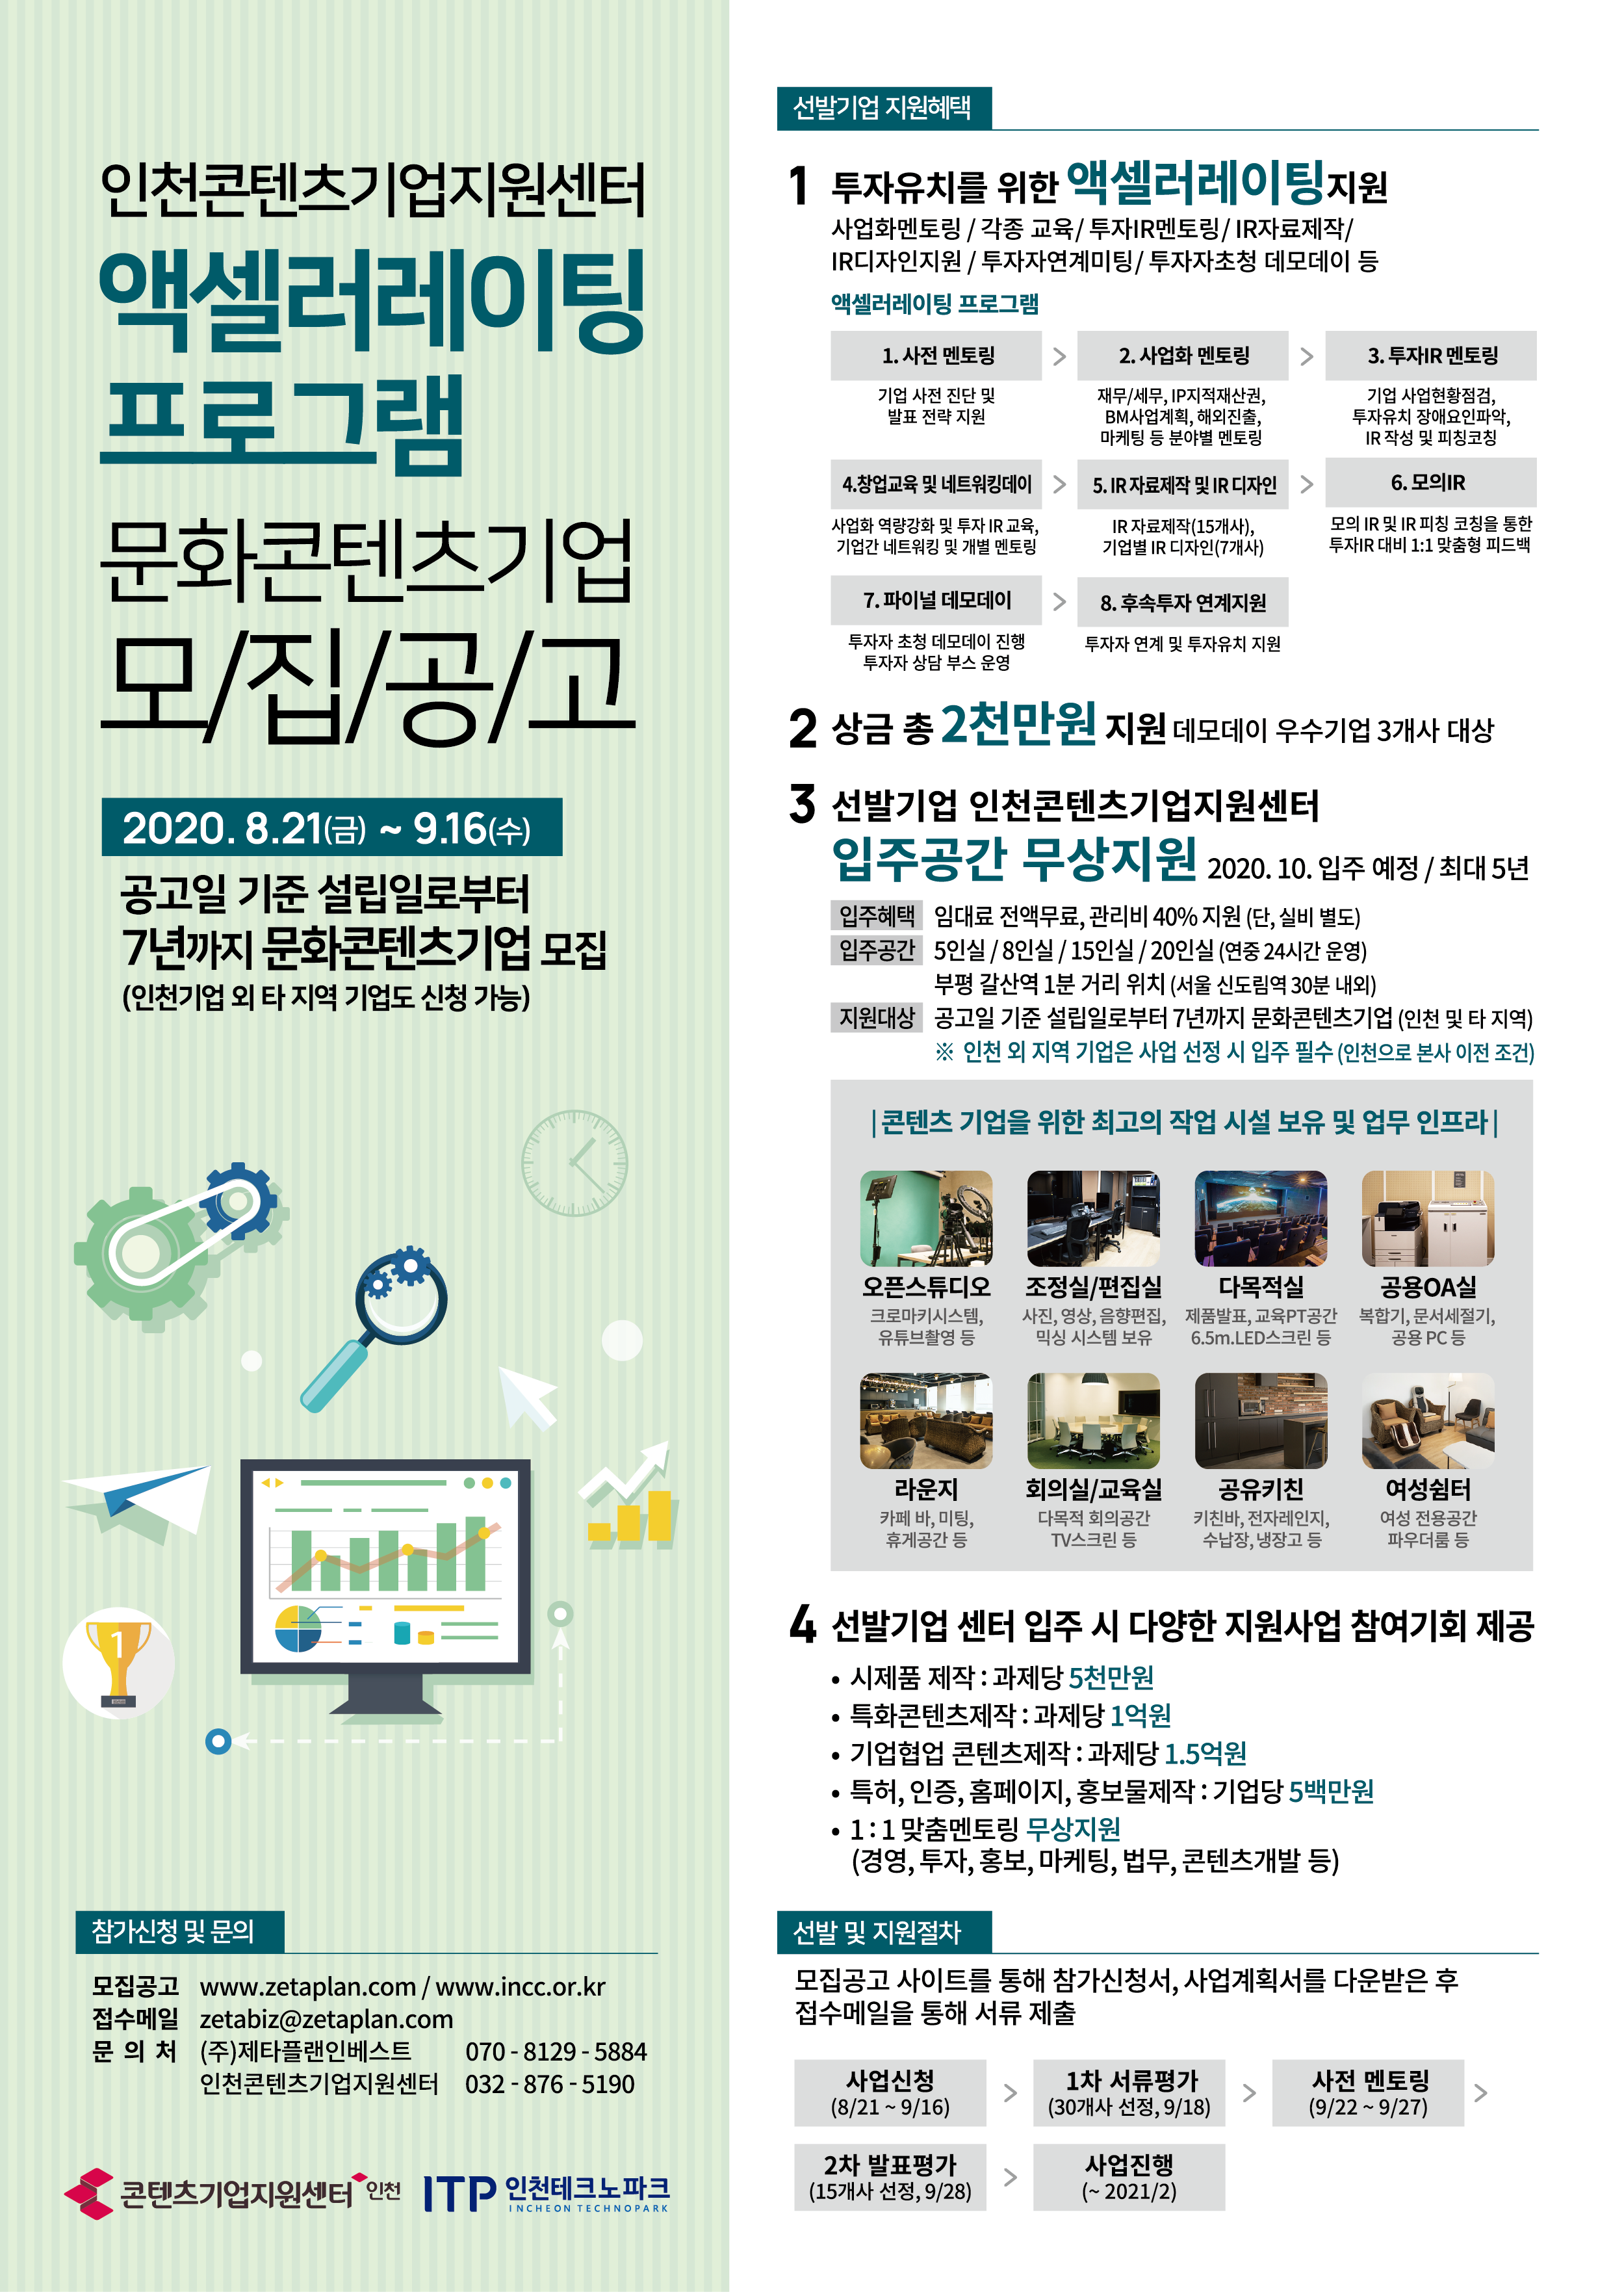 인천콘텐츠기업지원센터 액셀러레이팅 프로그램 참여기업 모집 